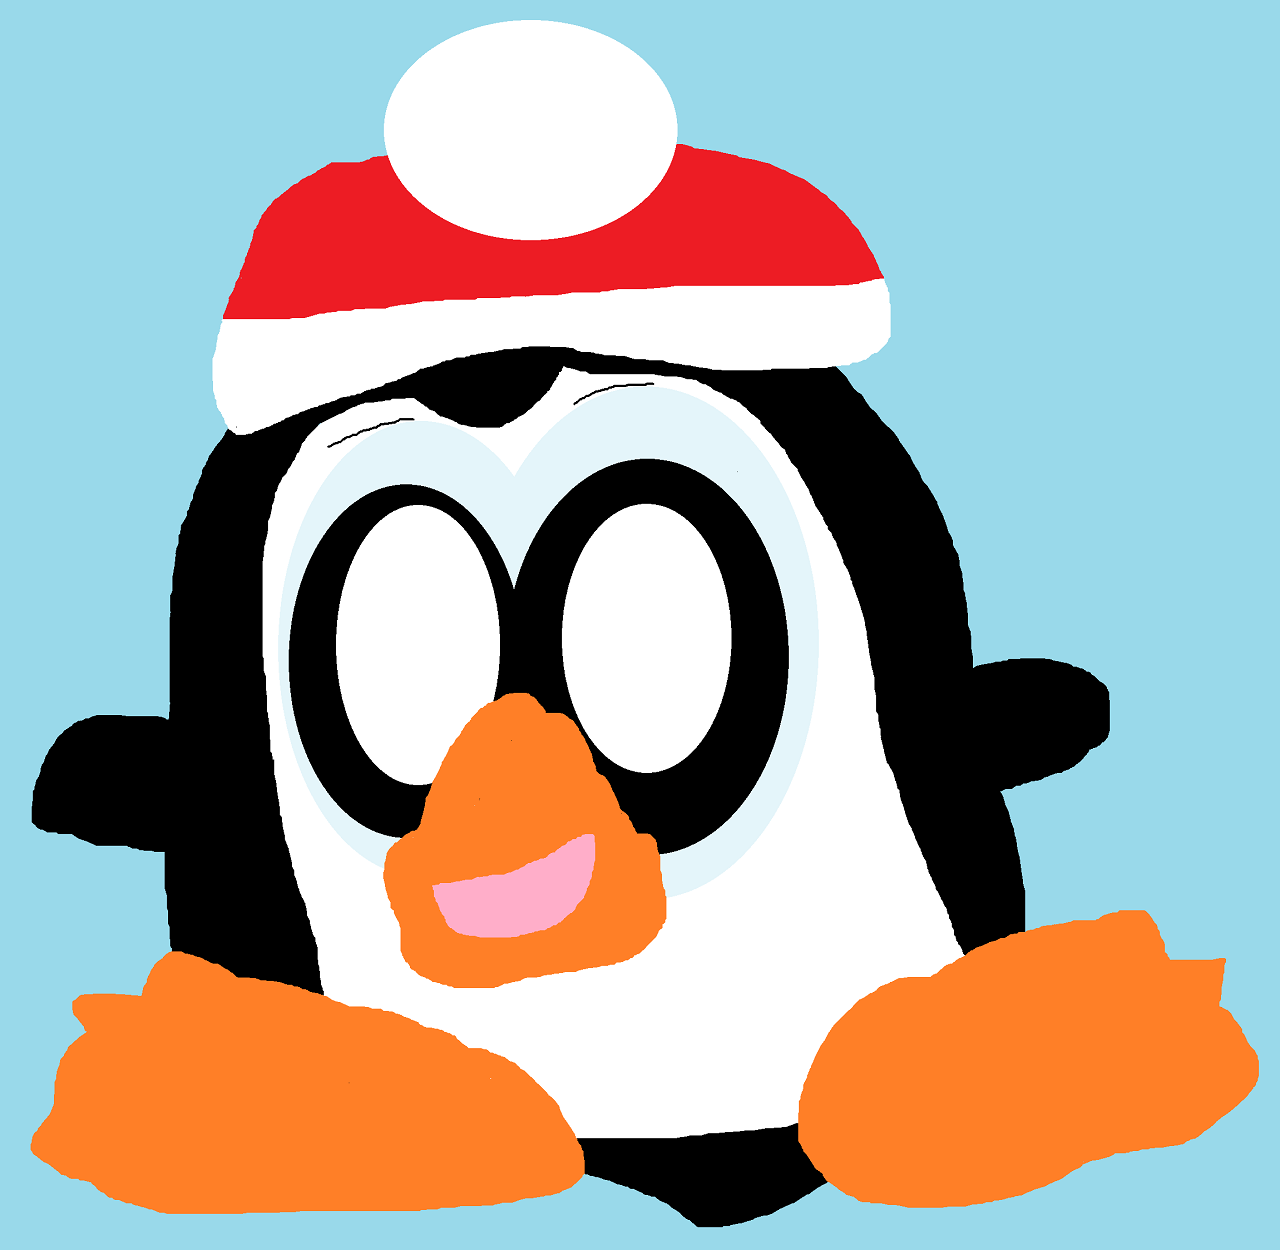 Random Penguin In Hat by Falconlobo